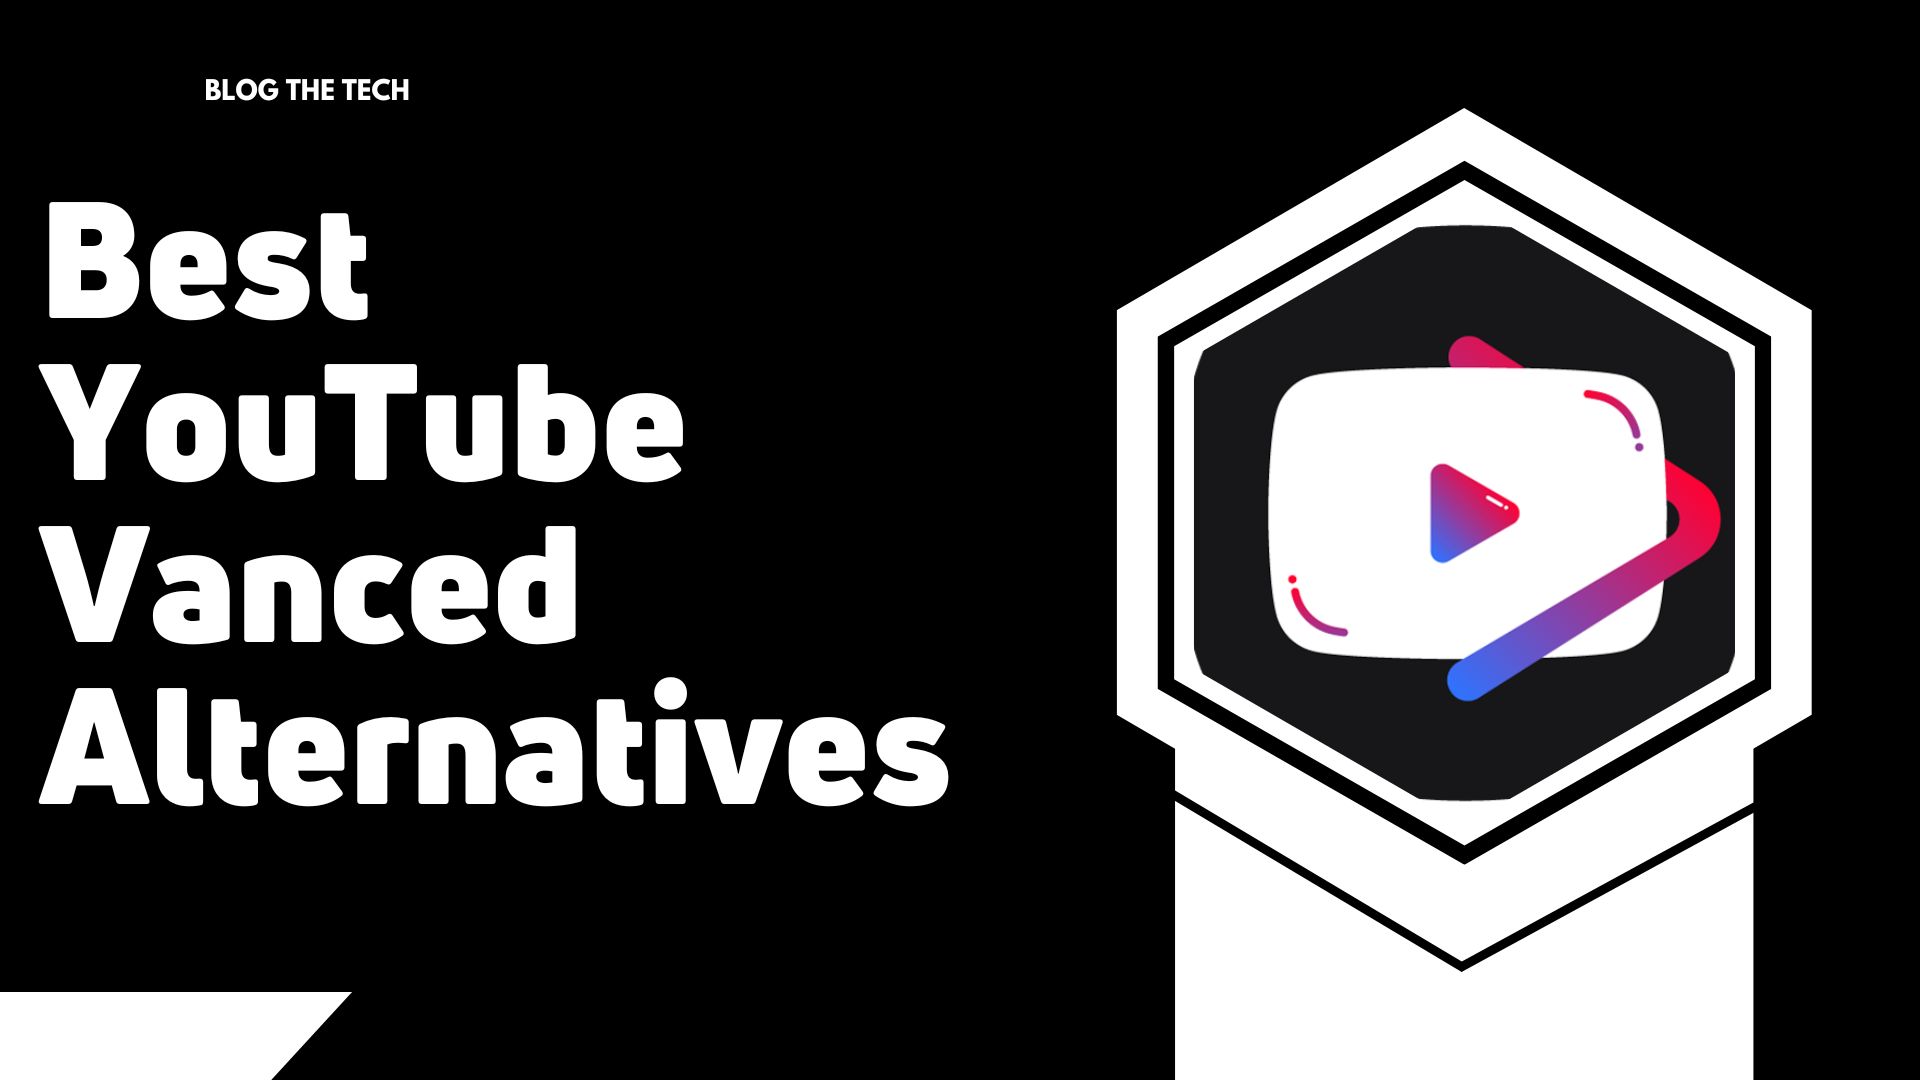 Best YouTube Vanced Alternatives